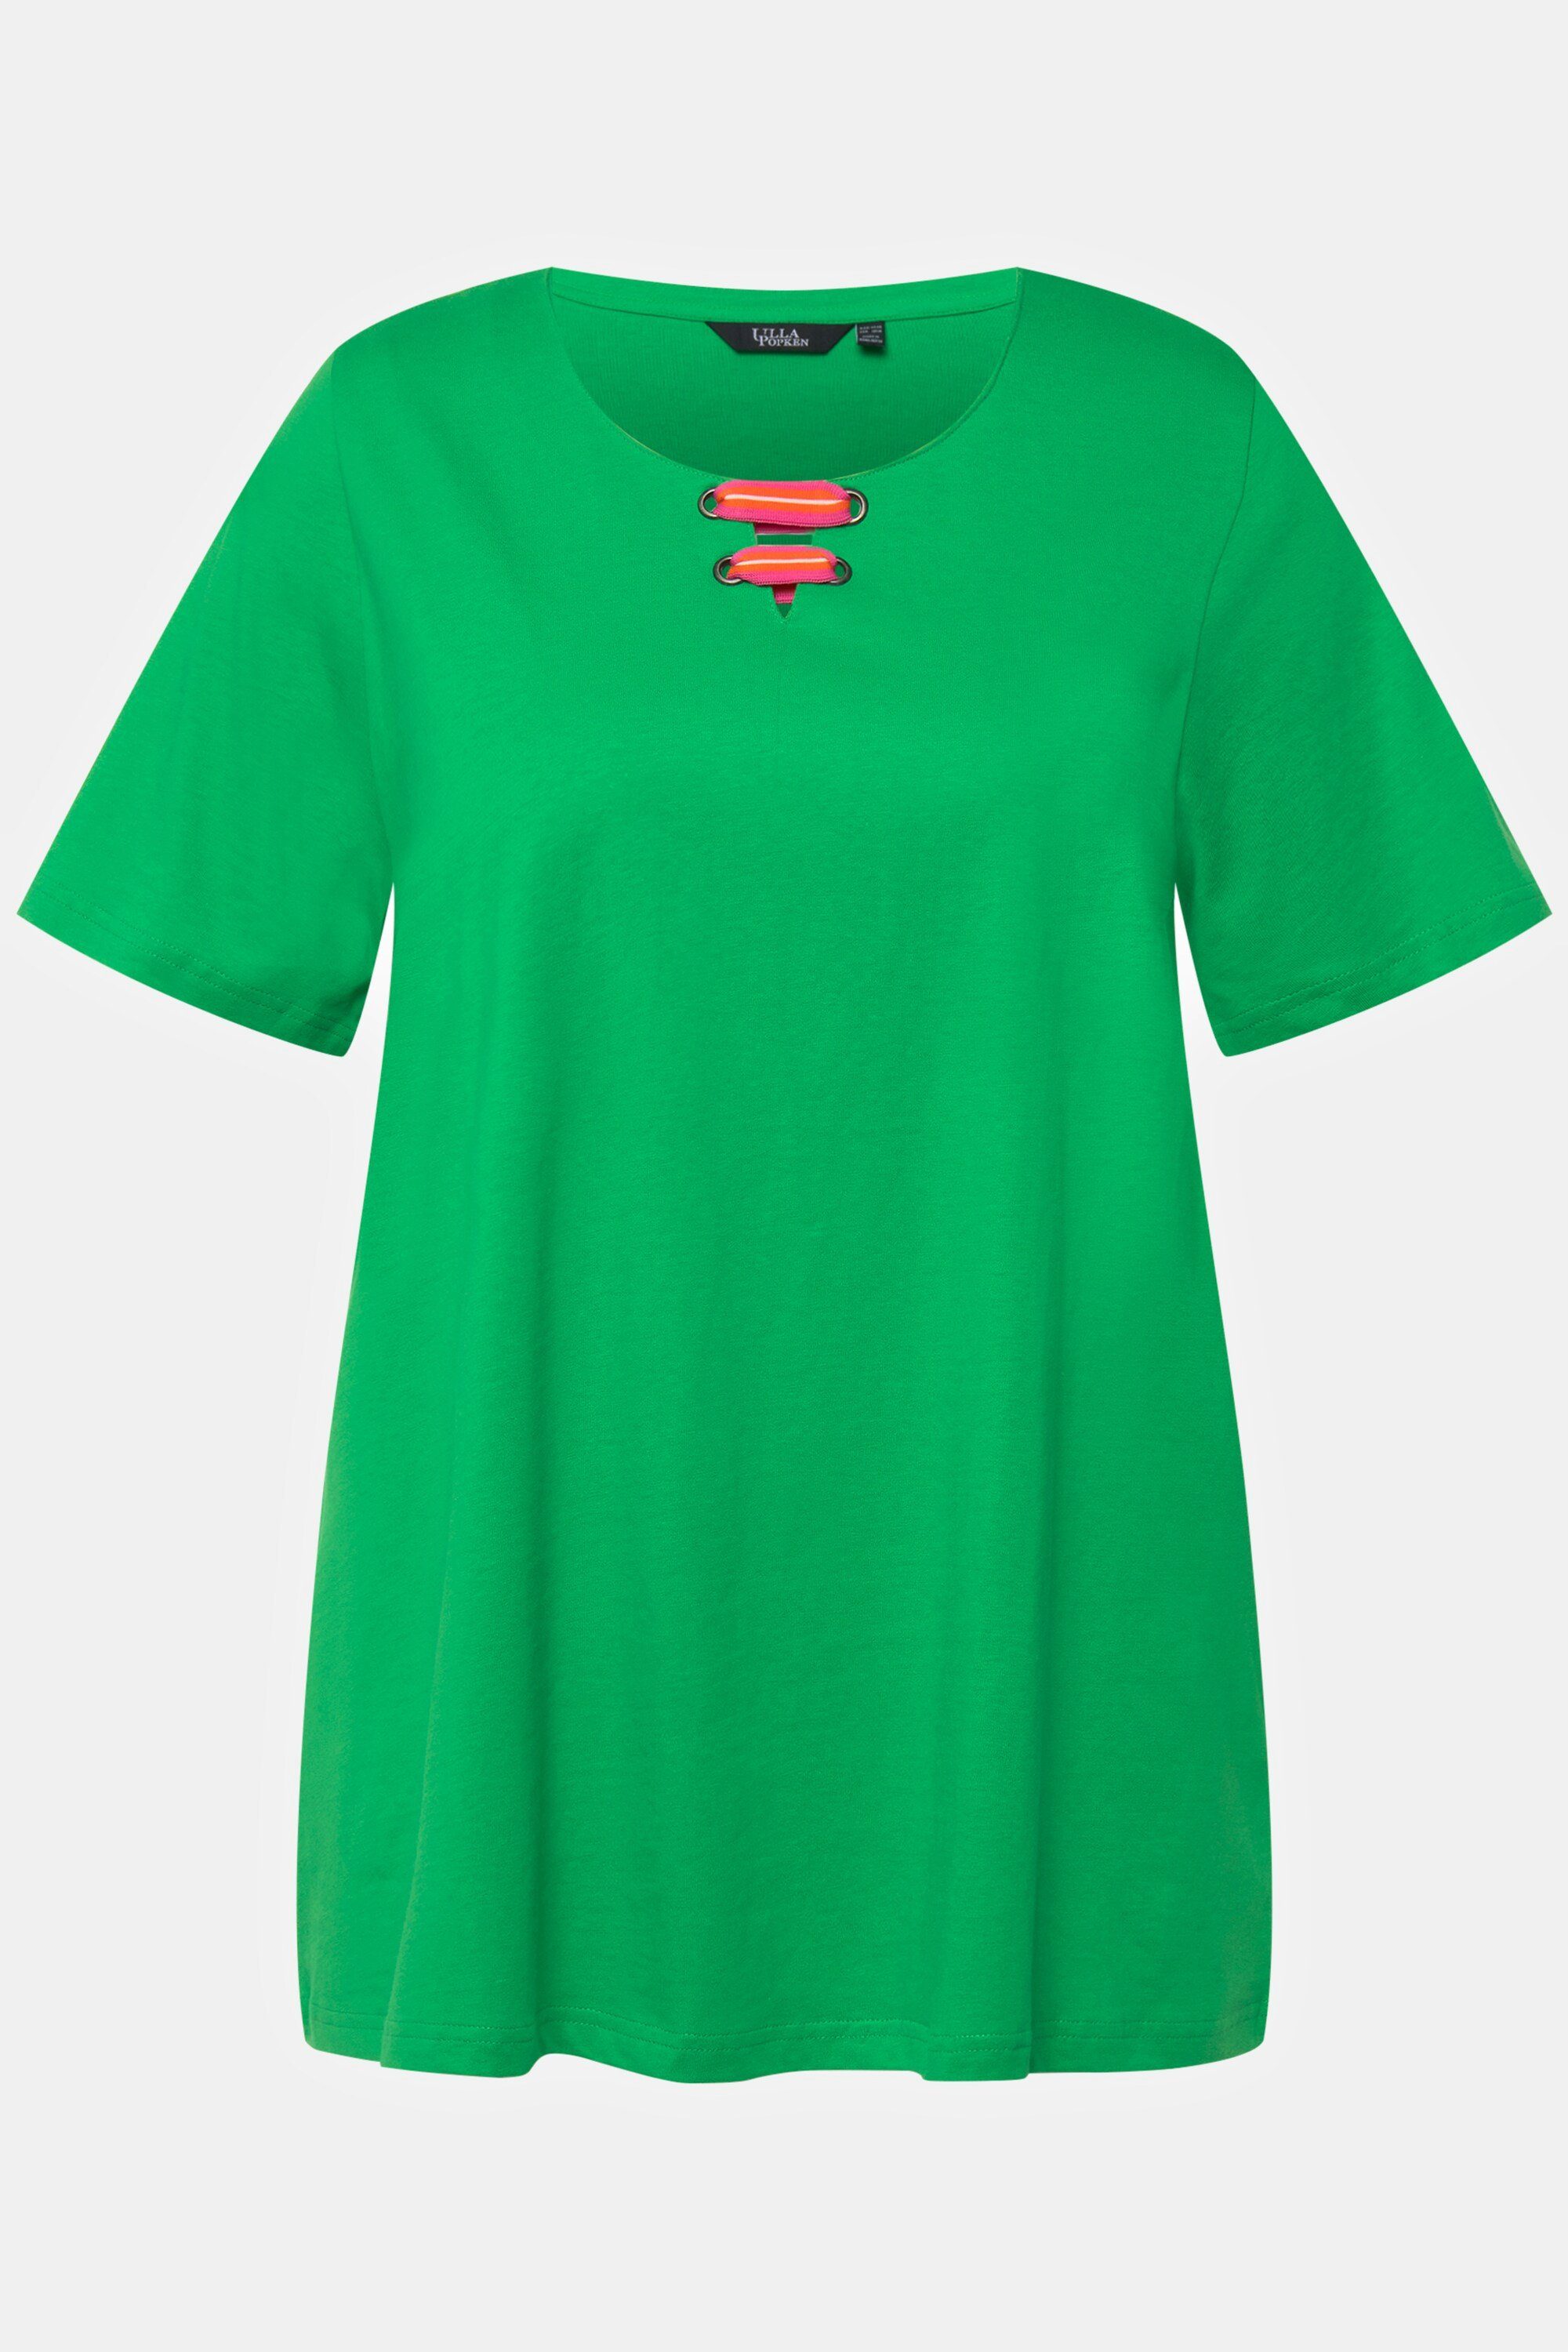 Popken Ulla A-Linie T-Shirt Rundhalsshirt Flügel-Halbarm grasgrün Tunika-Ausschnitt